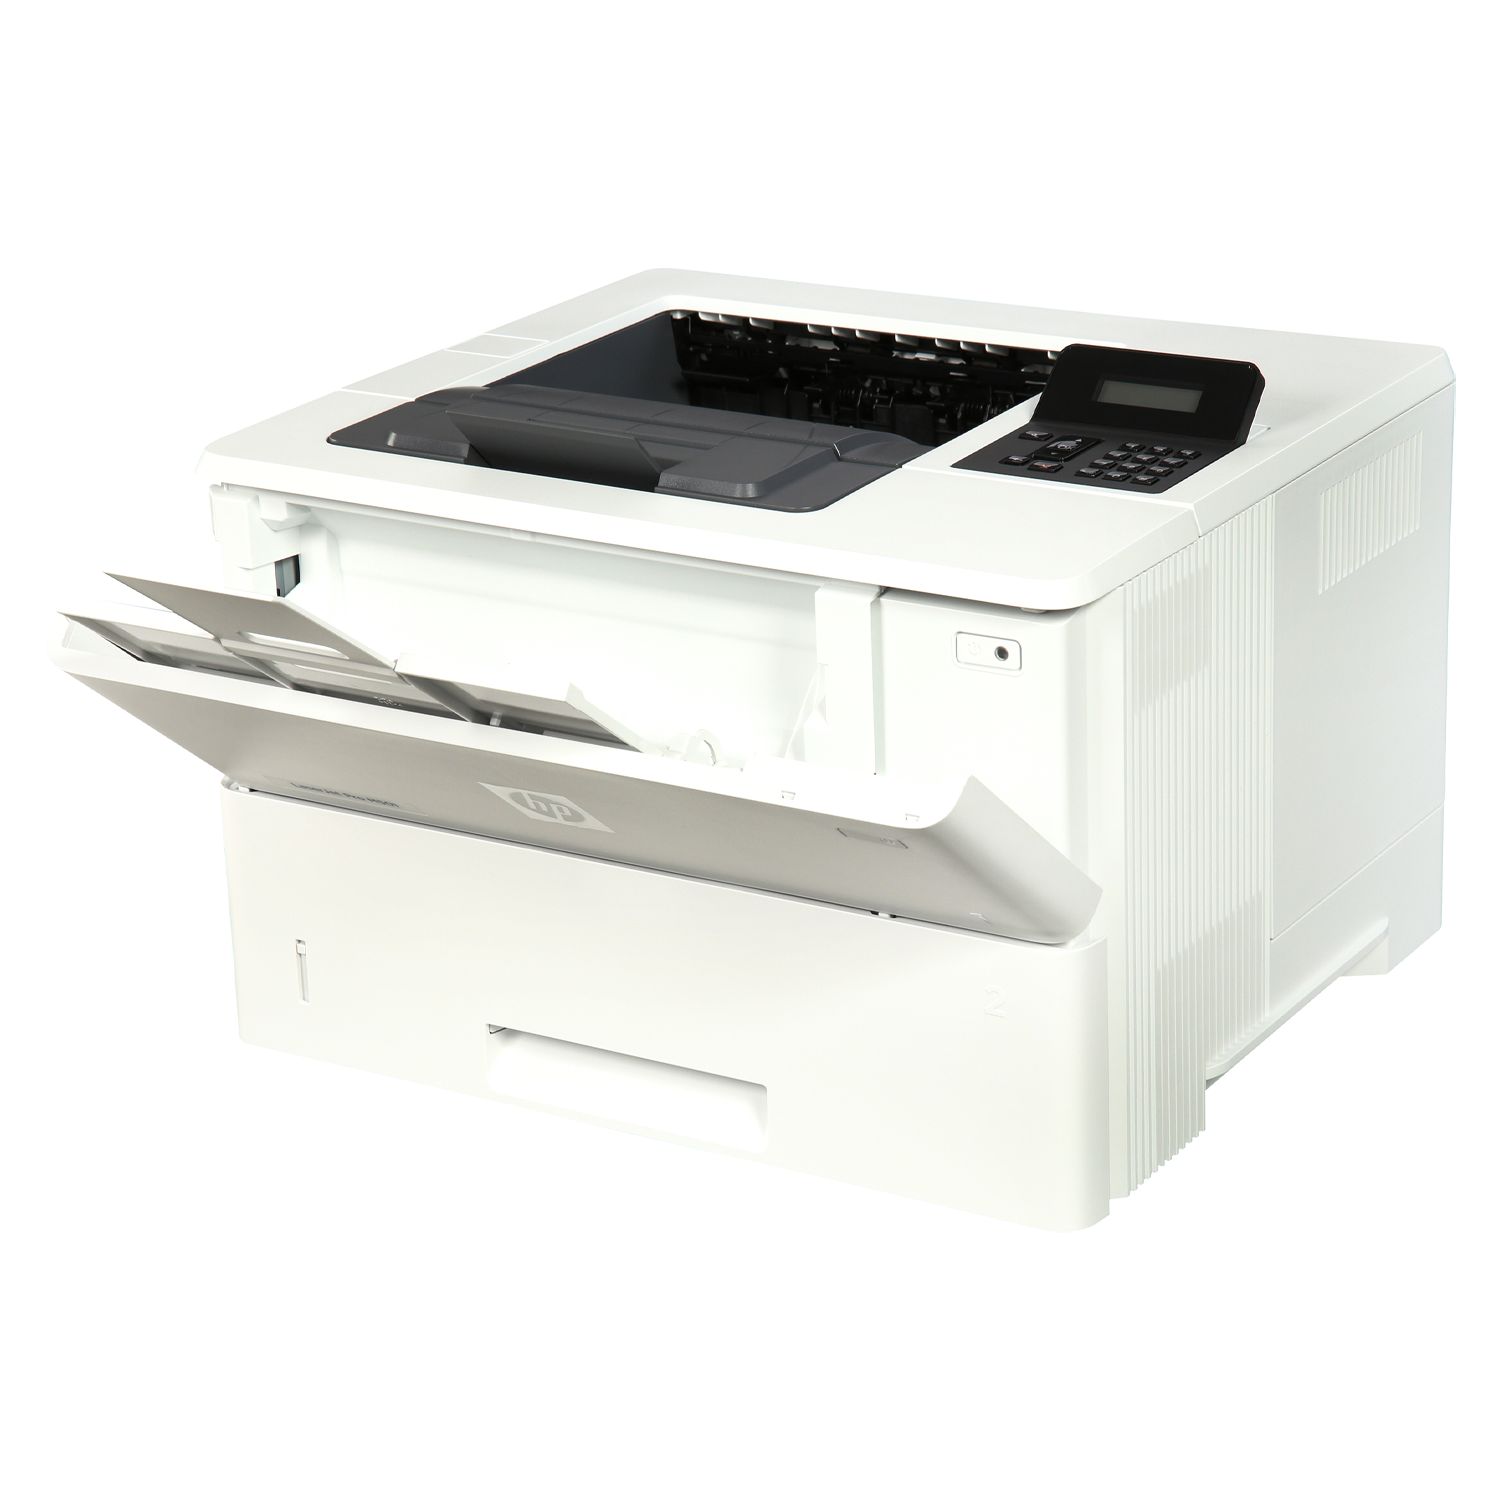 Impressora HP Laserjet Pro M501DN 220V - Branco
